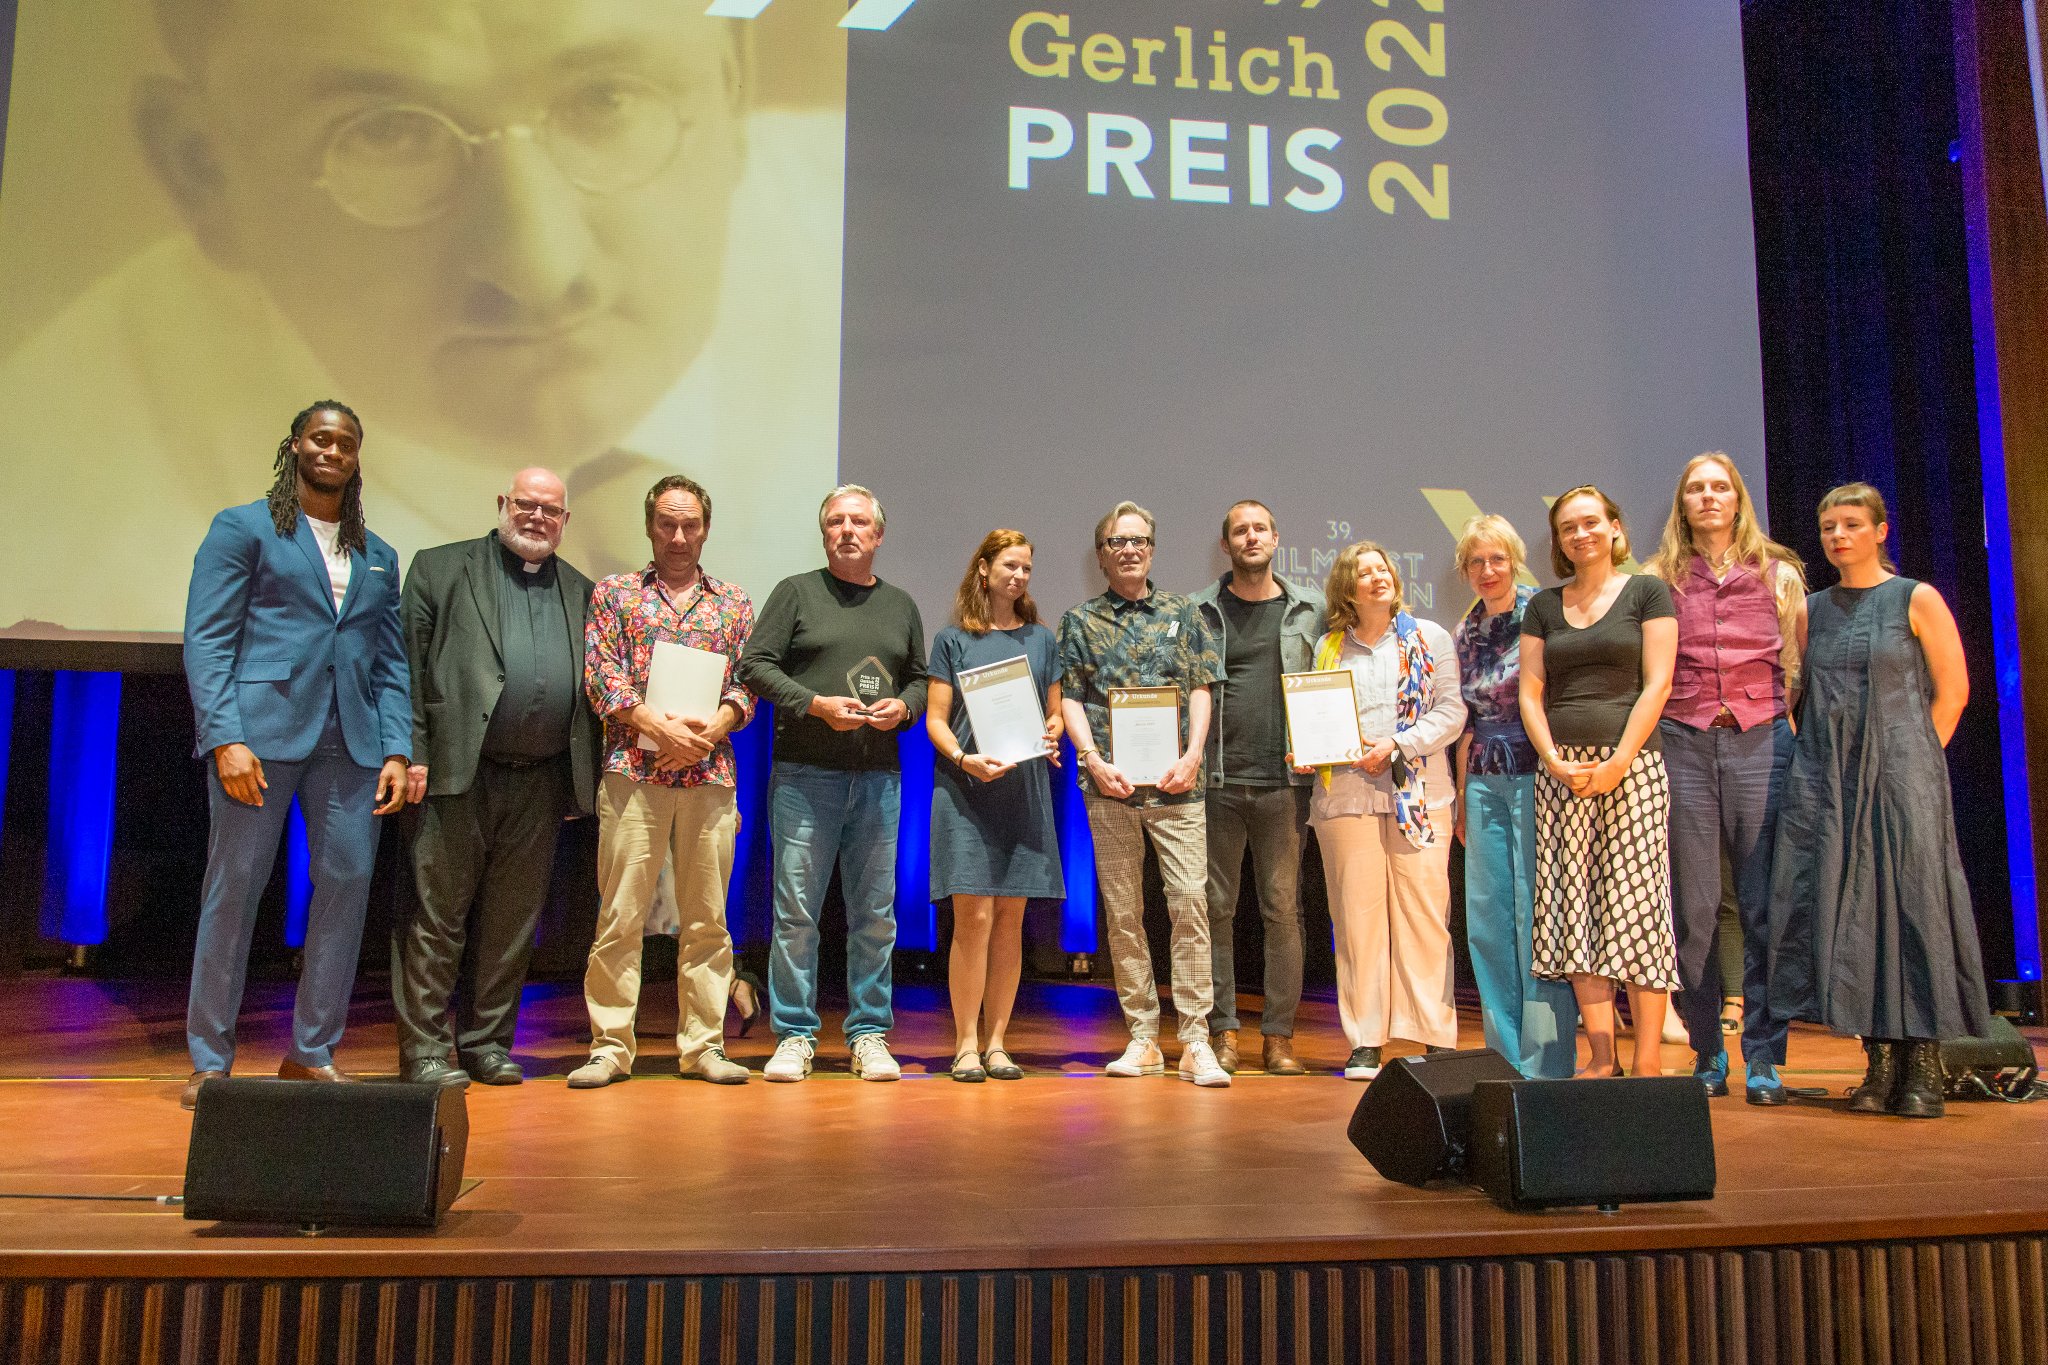 Fritz-Gerlich-Preis